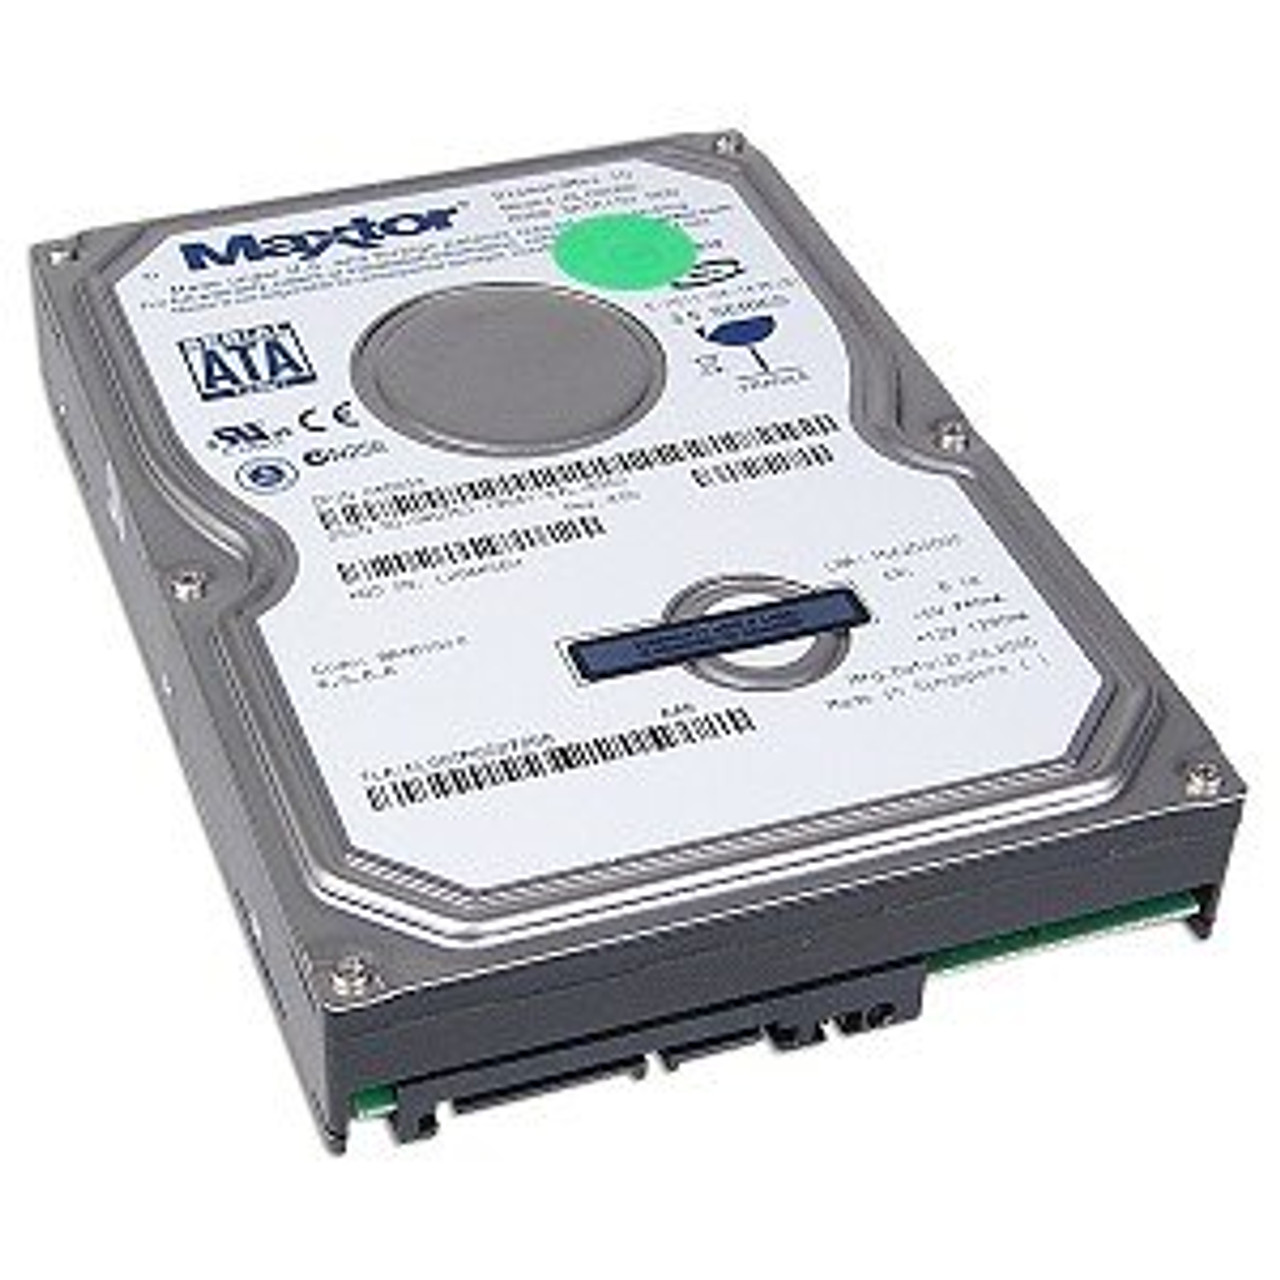 80GB MaxtorSATA 3.5" Internal Hard Drive 6L080M0